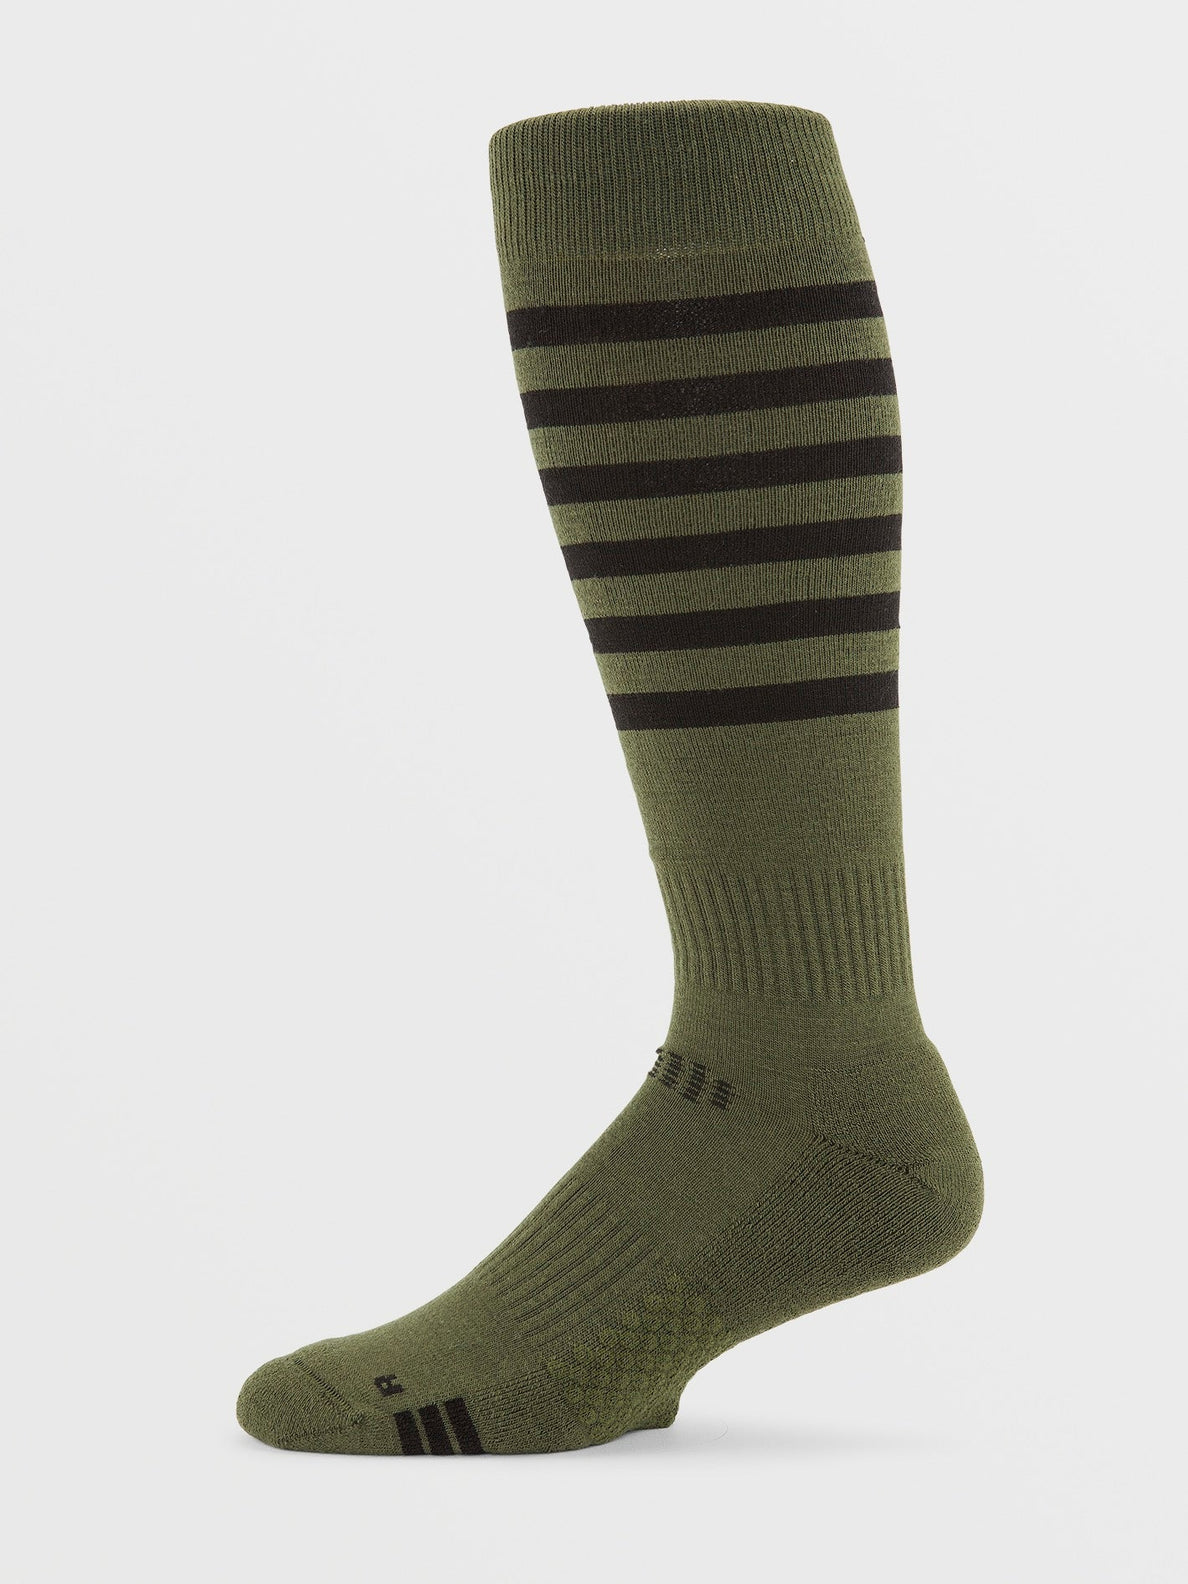 Kootney Socks - MILITARY (J6352400_MIL) [1]